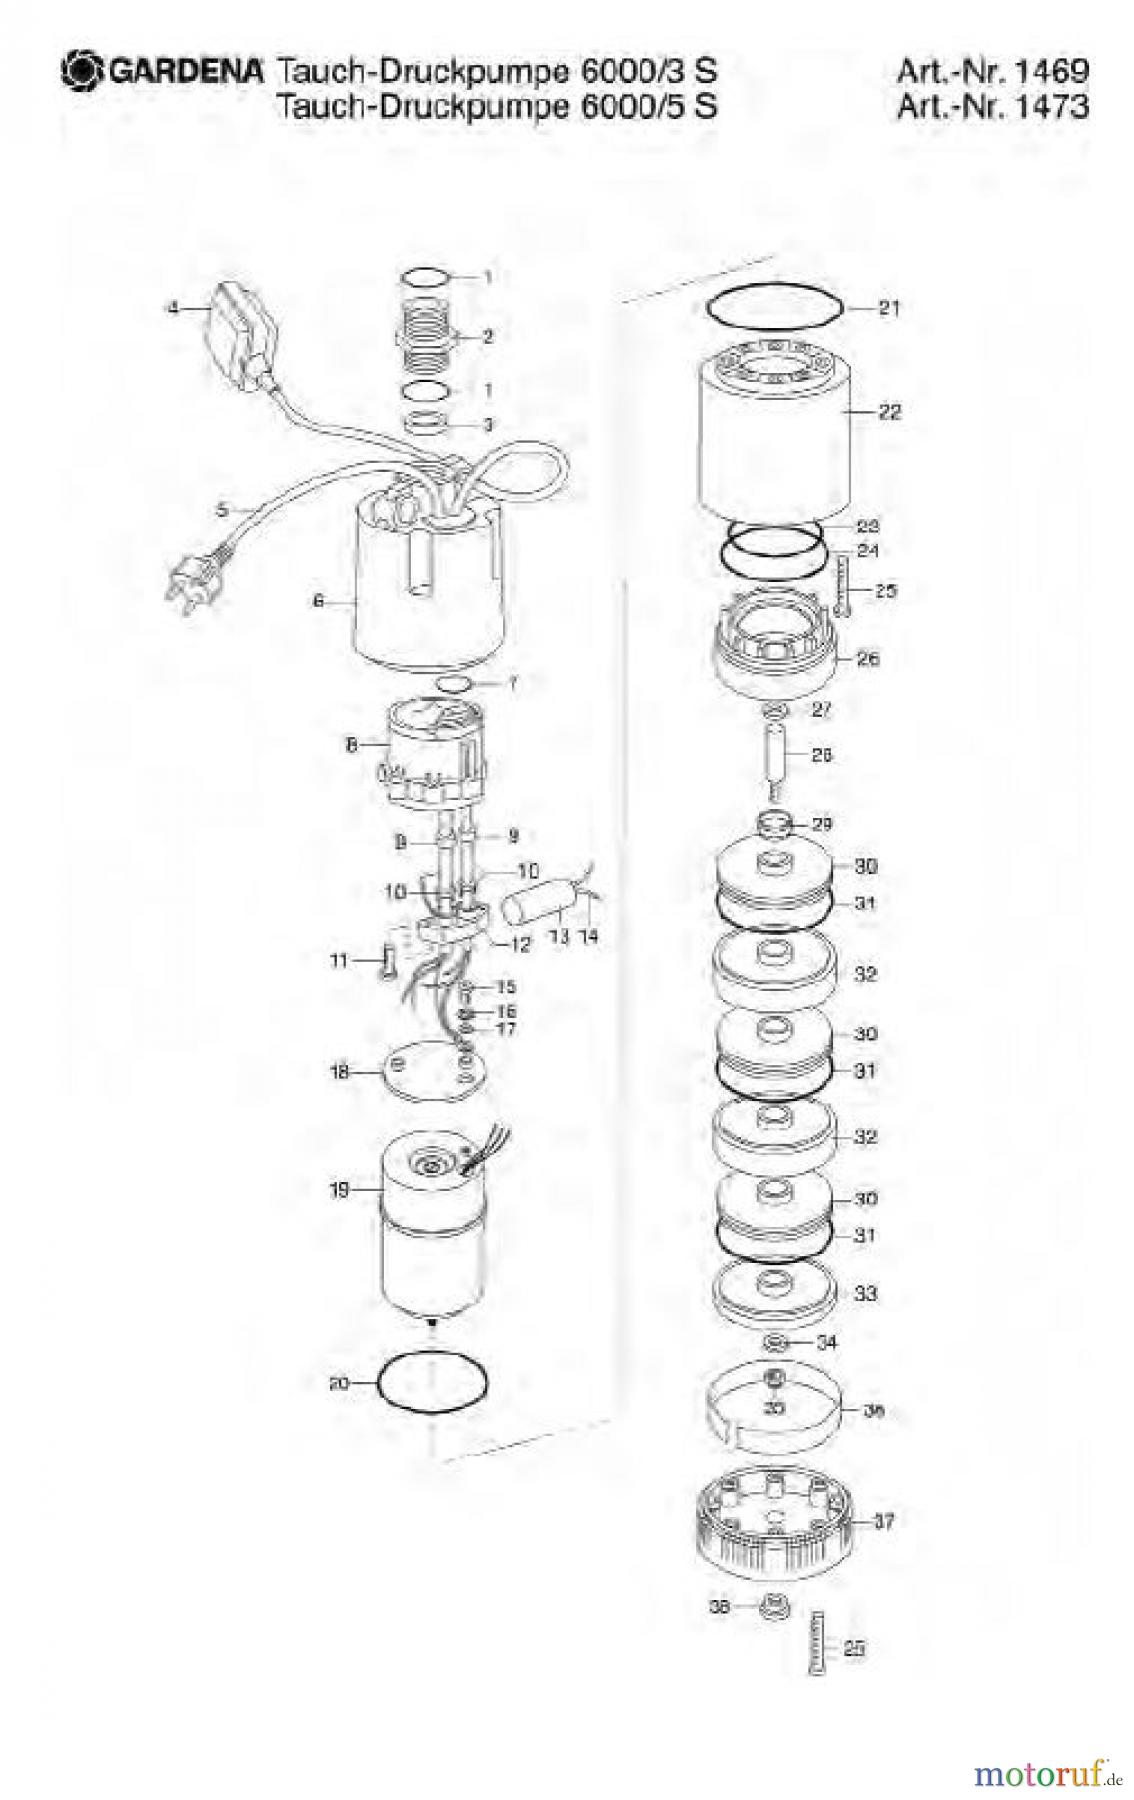  Gardena Wassertechnik Pumpen Tauch-Druckpumpe 6000/3 S Art.Nr. 1469